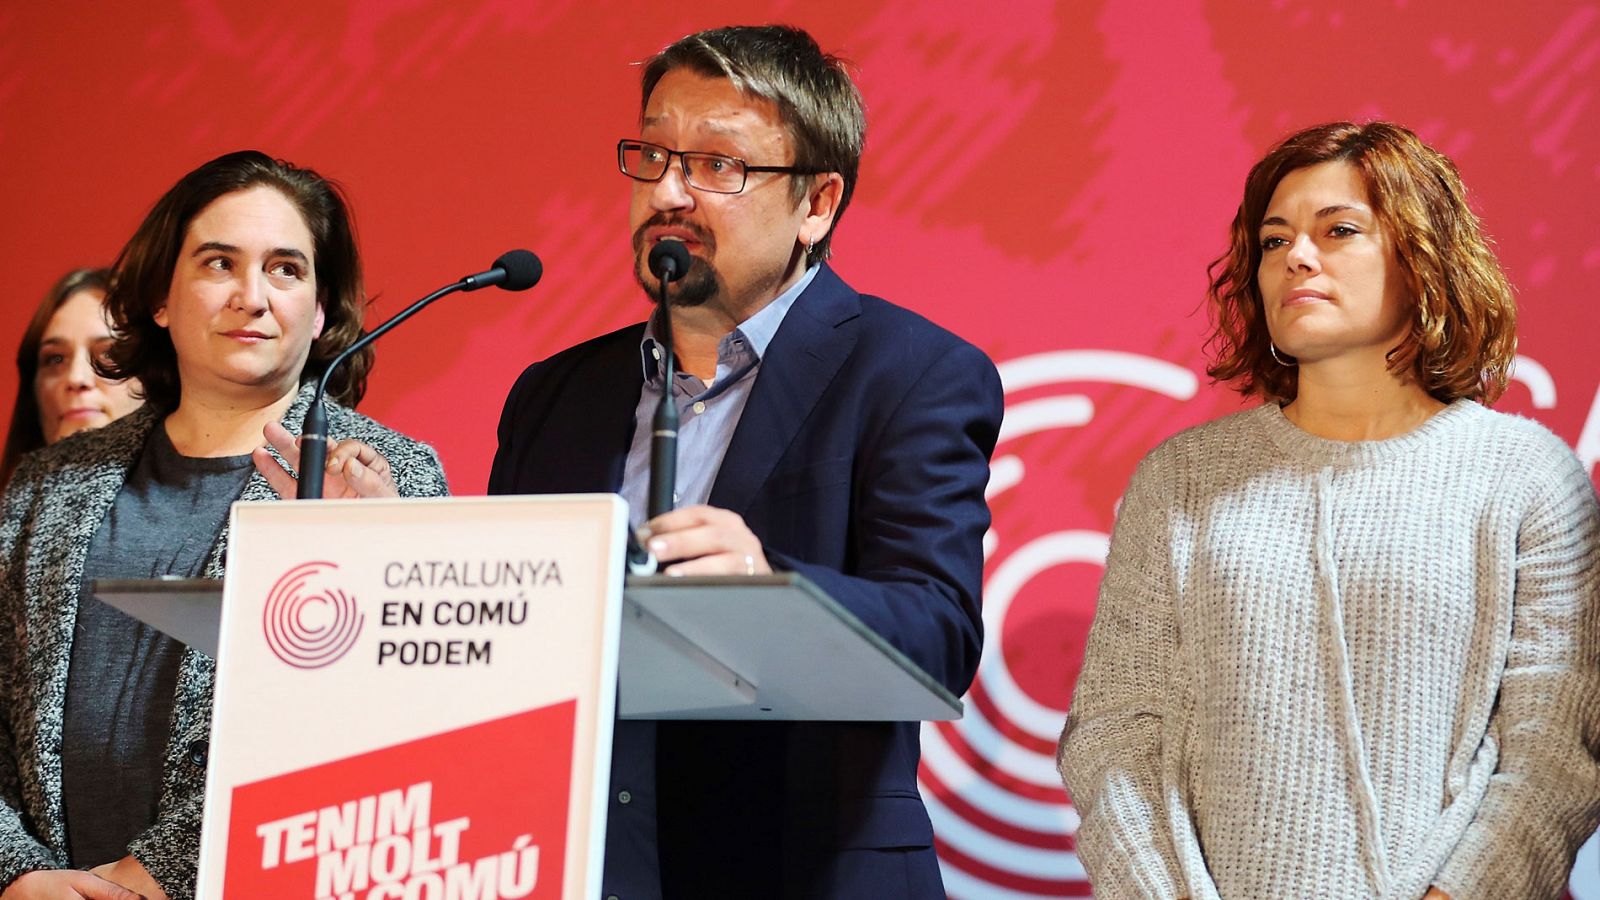 Elecciones catalanas: Domènech reconoce que los resultados del 21D "no son los querían y esperaban"